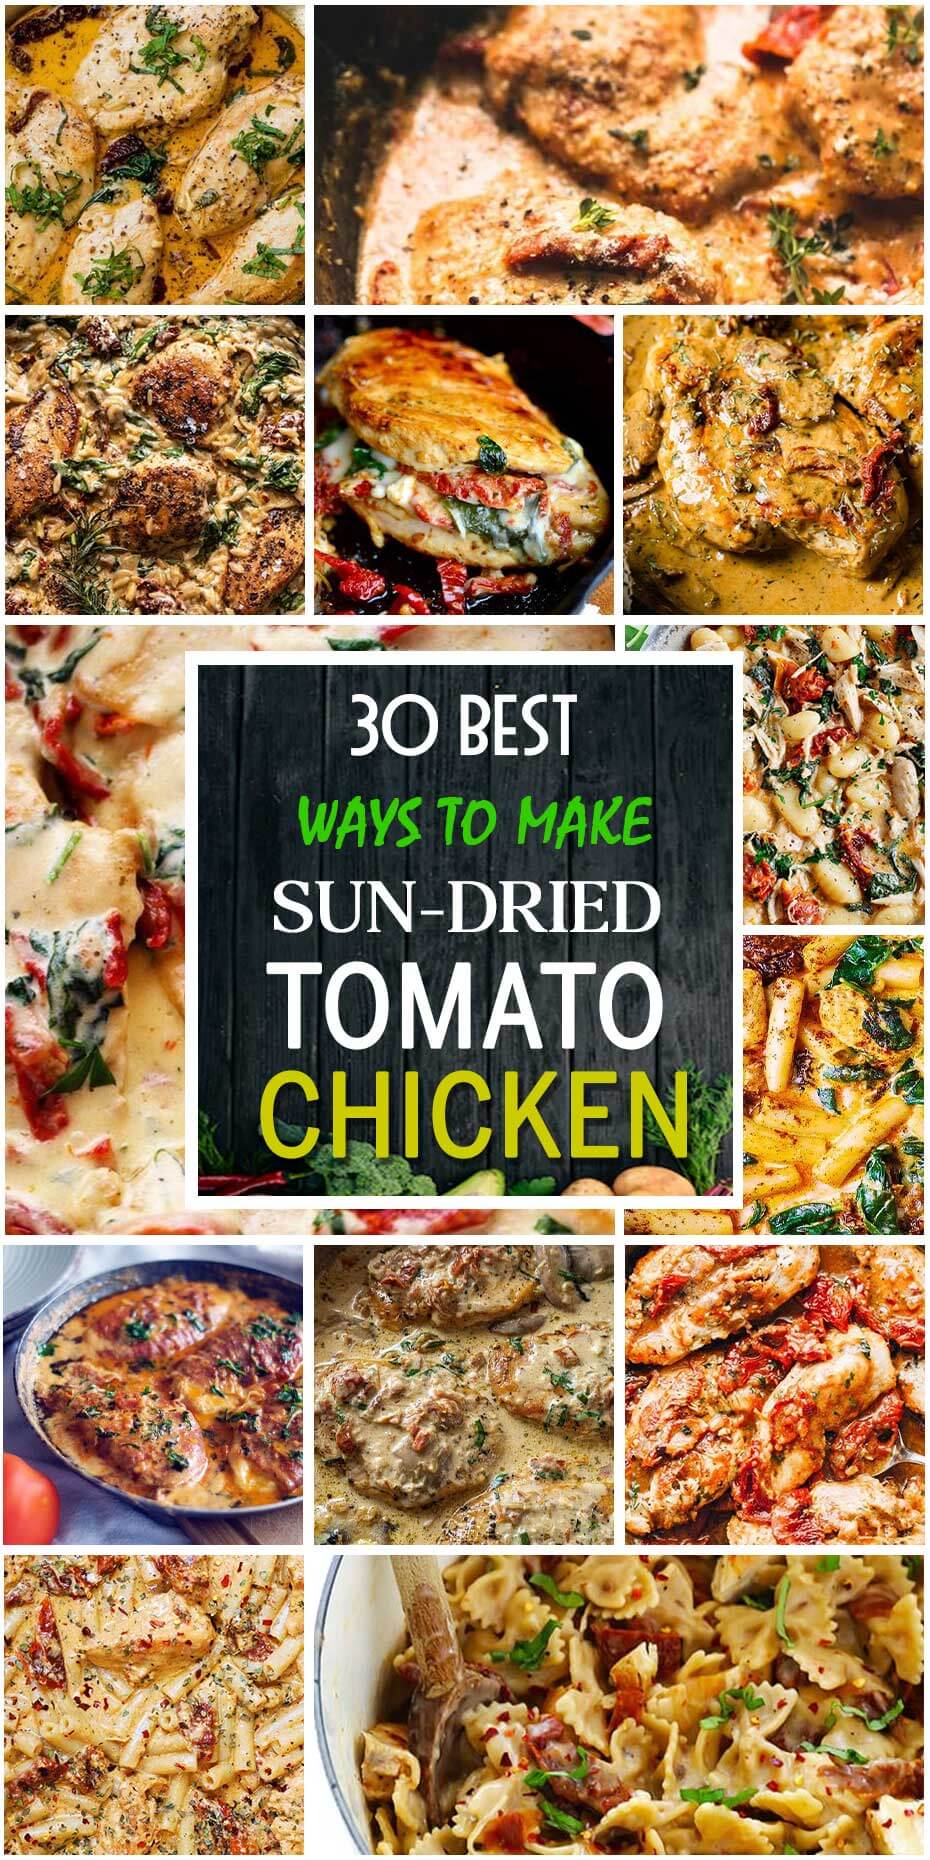 30 Best Sun-Dried Tomato Chicken Dishes